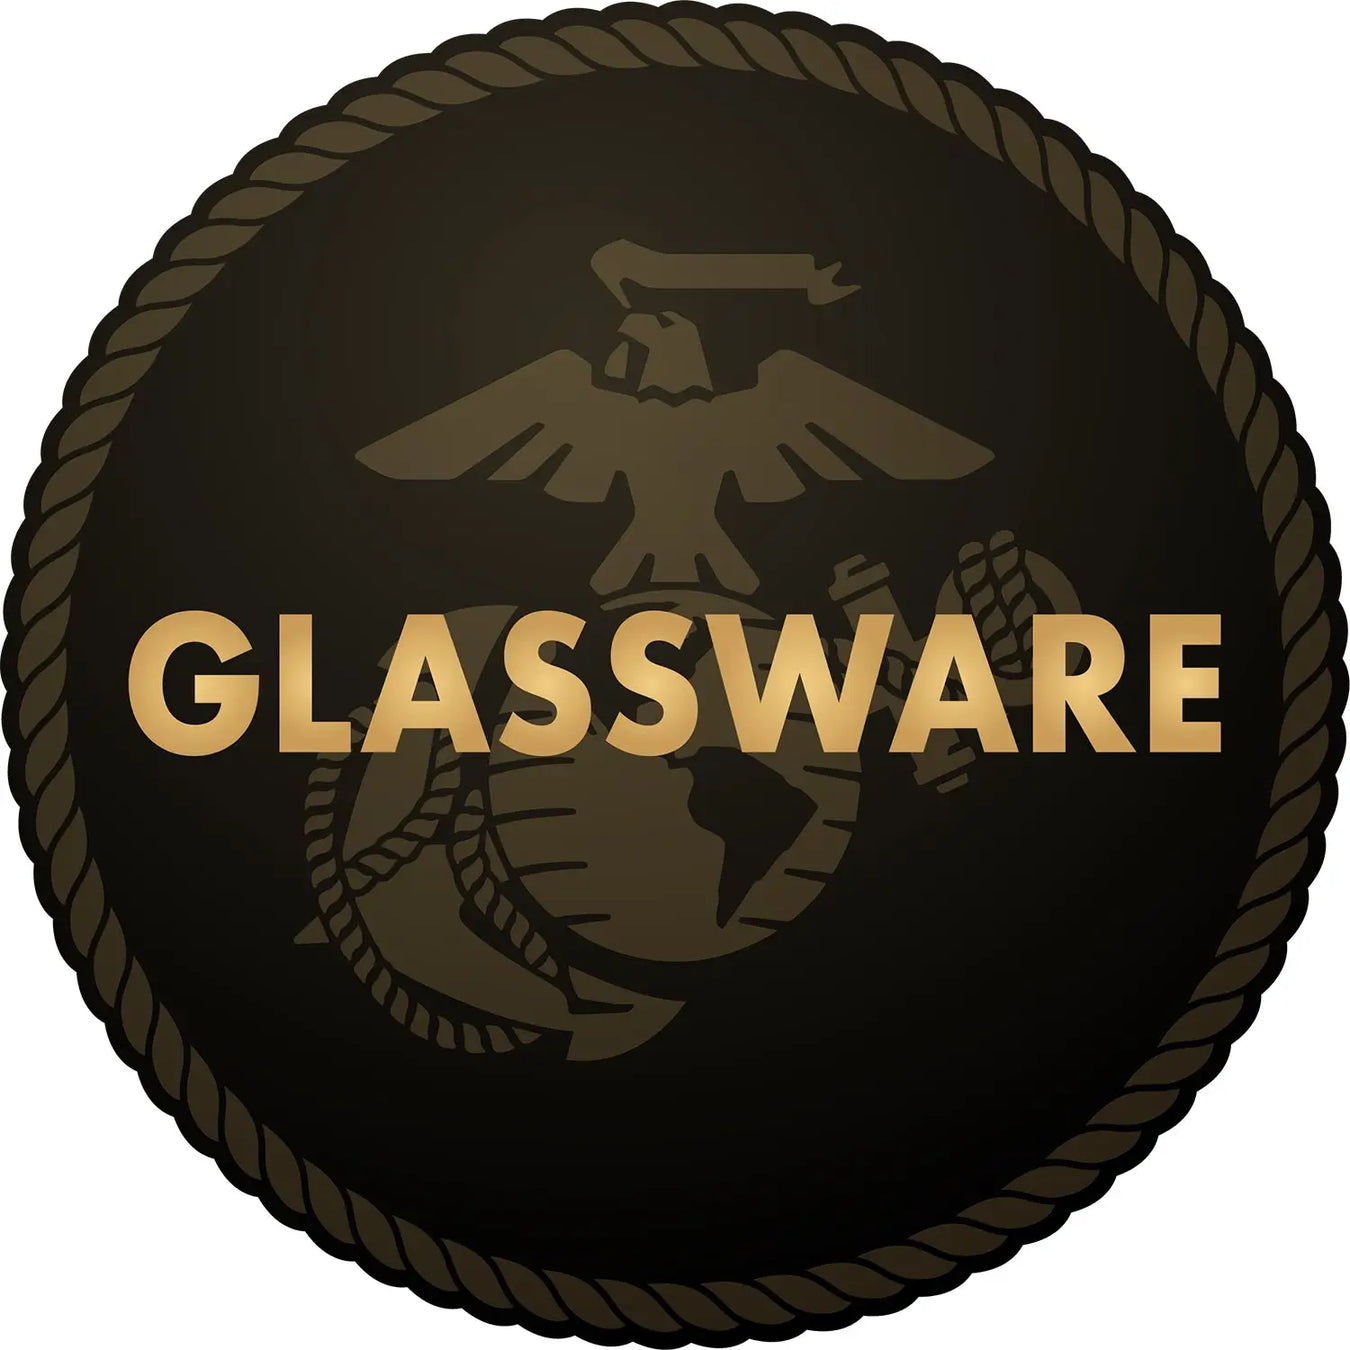 U.S. Marine Corps Glassware